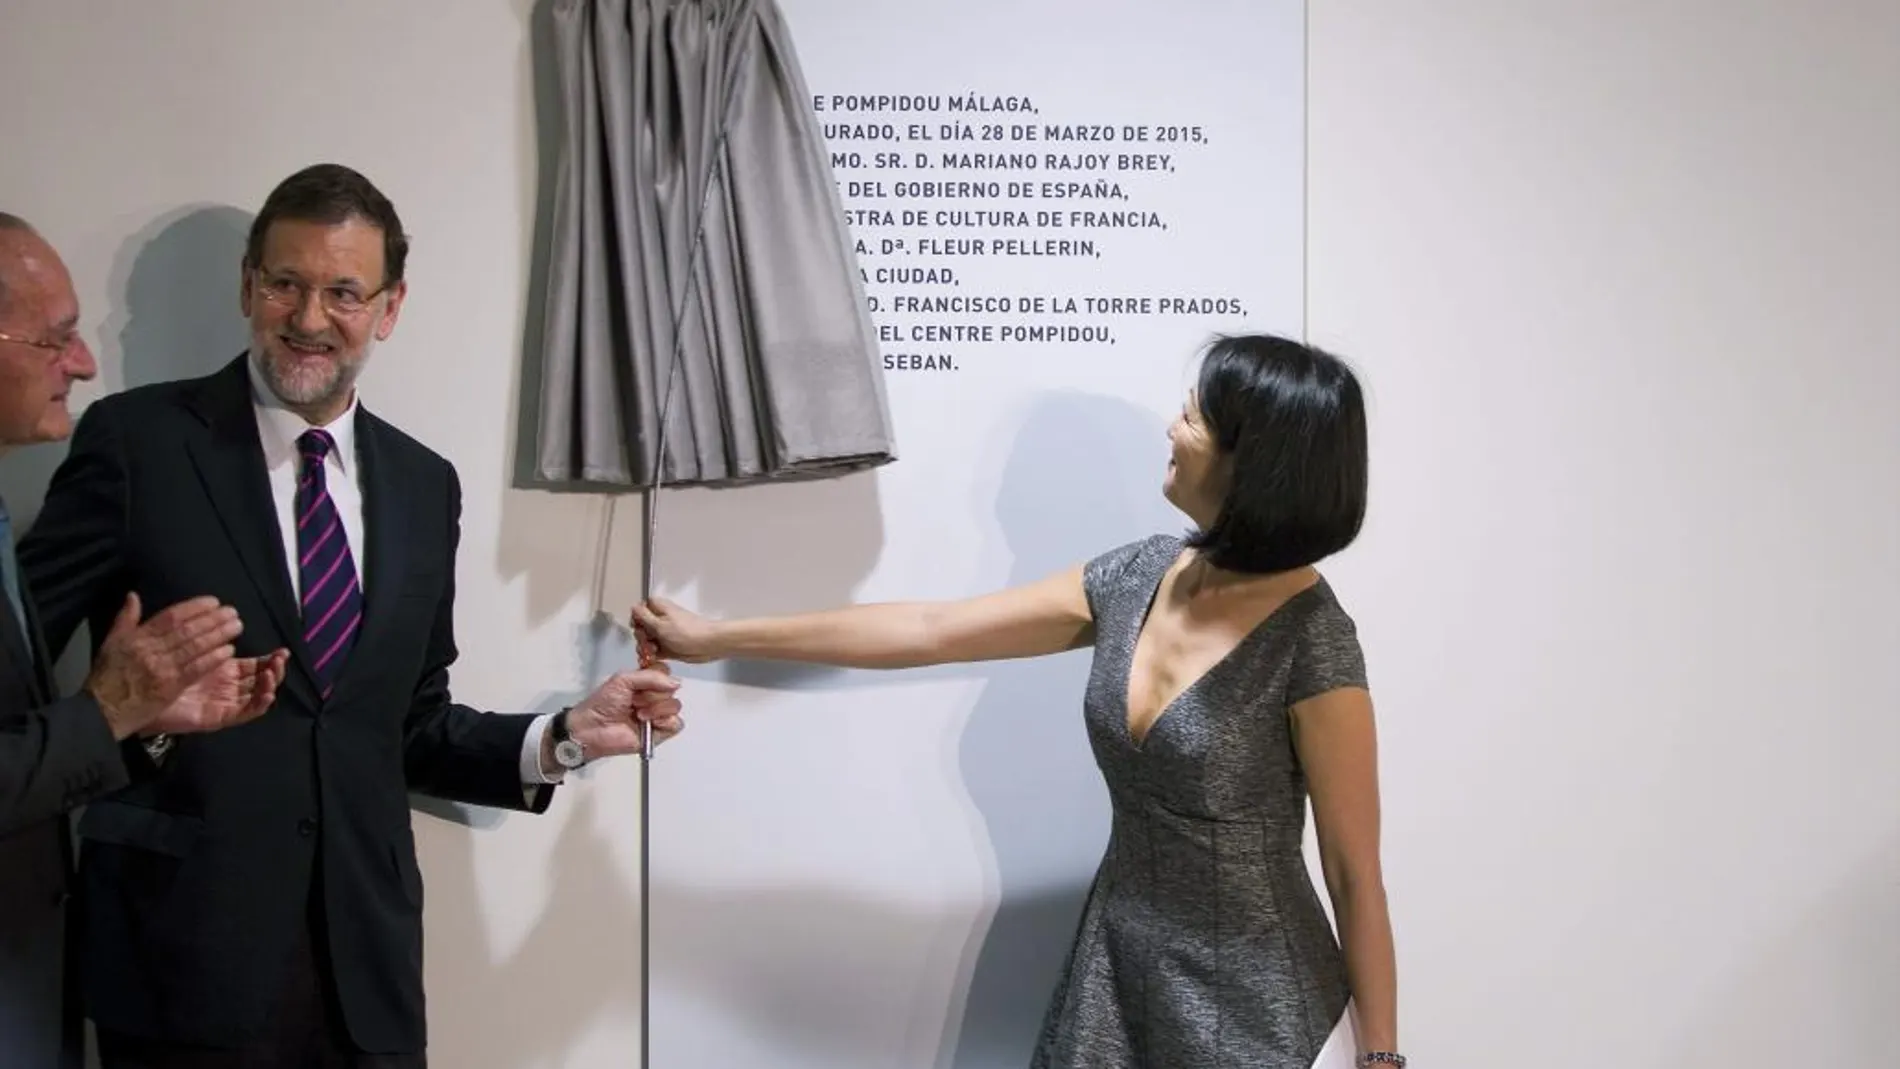 El presidente del Gobierno, Mariano Rajoy, junto a la ministra francesa de Cultura, Fleur Pellerin, destapan una placa conmemorativa durante la inauguración de este centro de arte